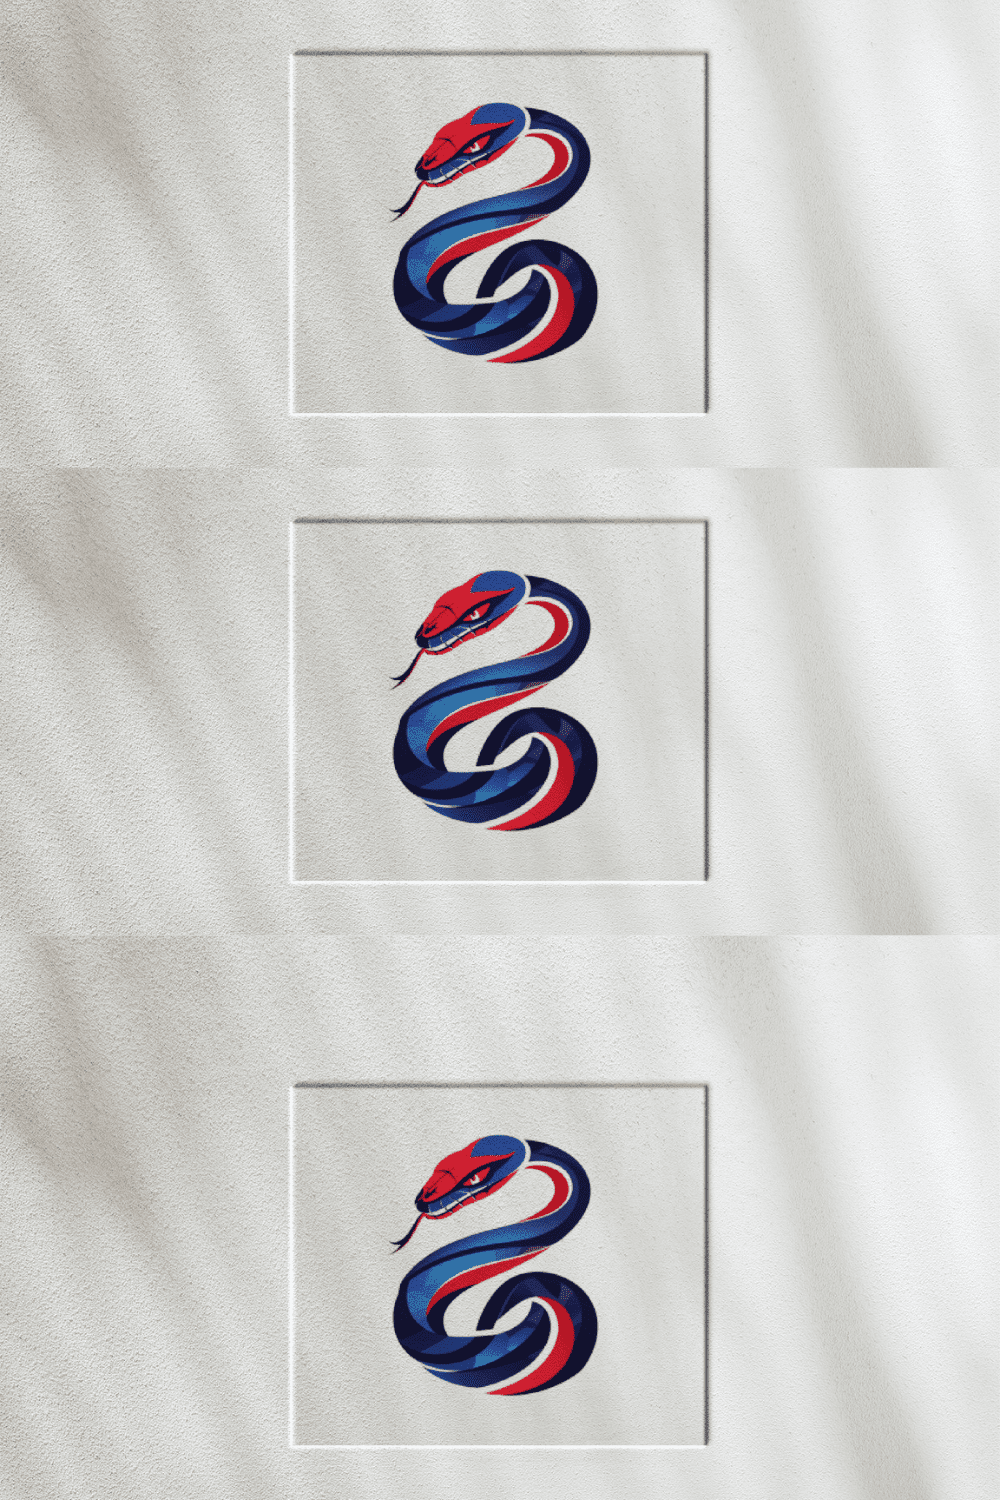 Snake Logo pinterest preview image.